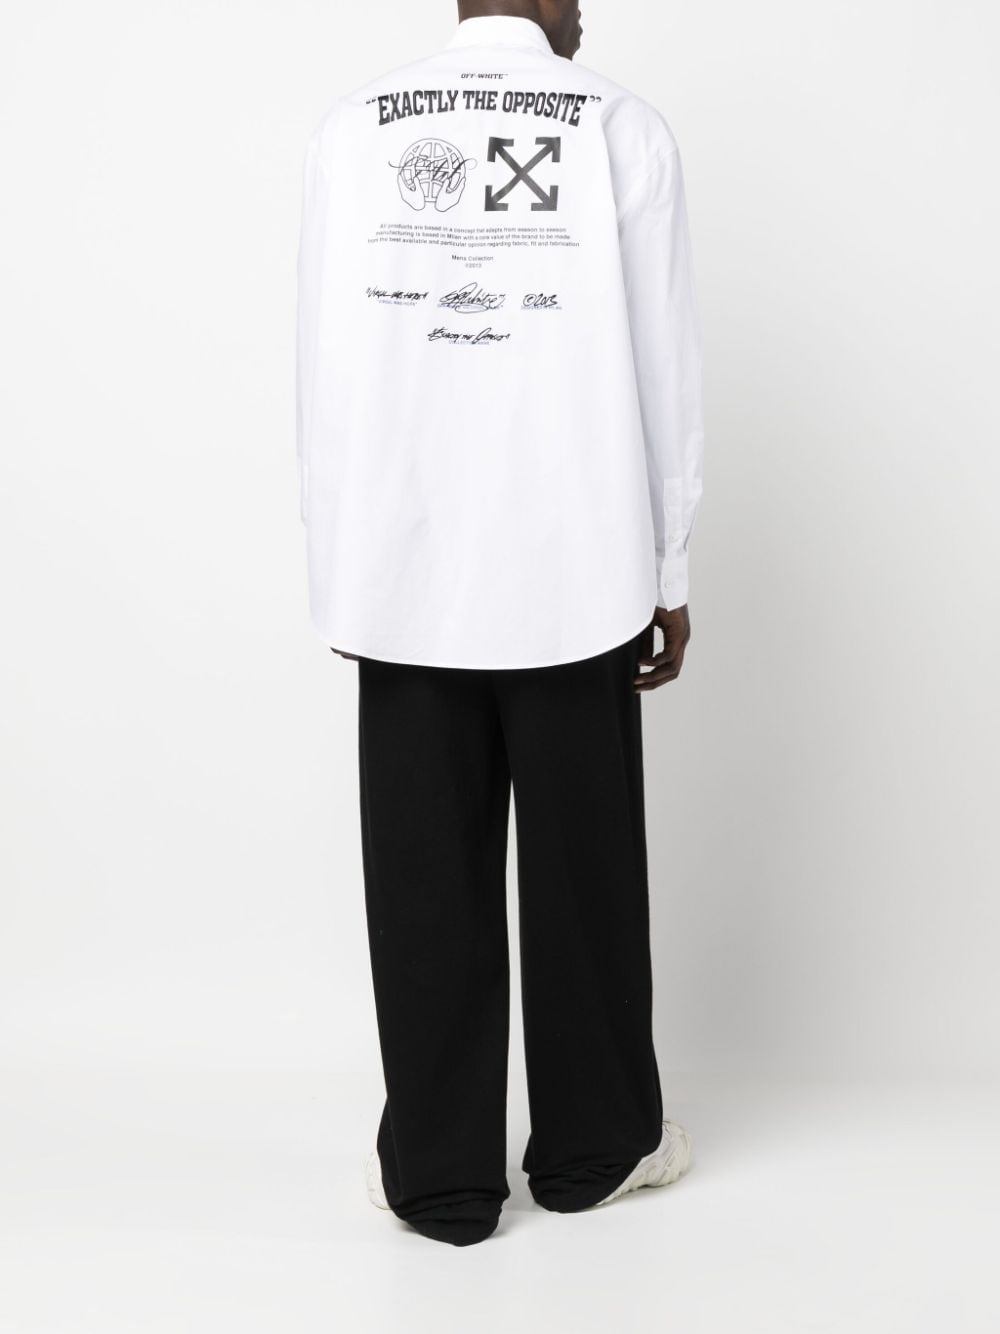 Off-White Exact Opp Cotton Shirt - Farfetch